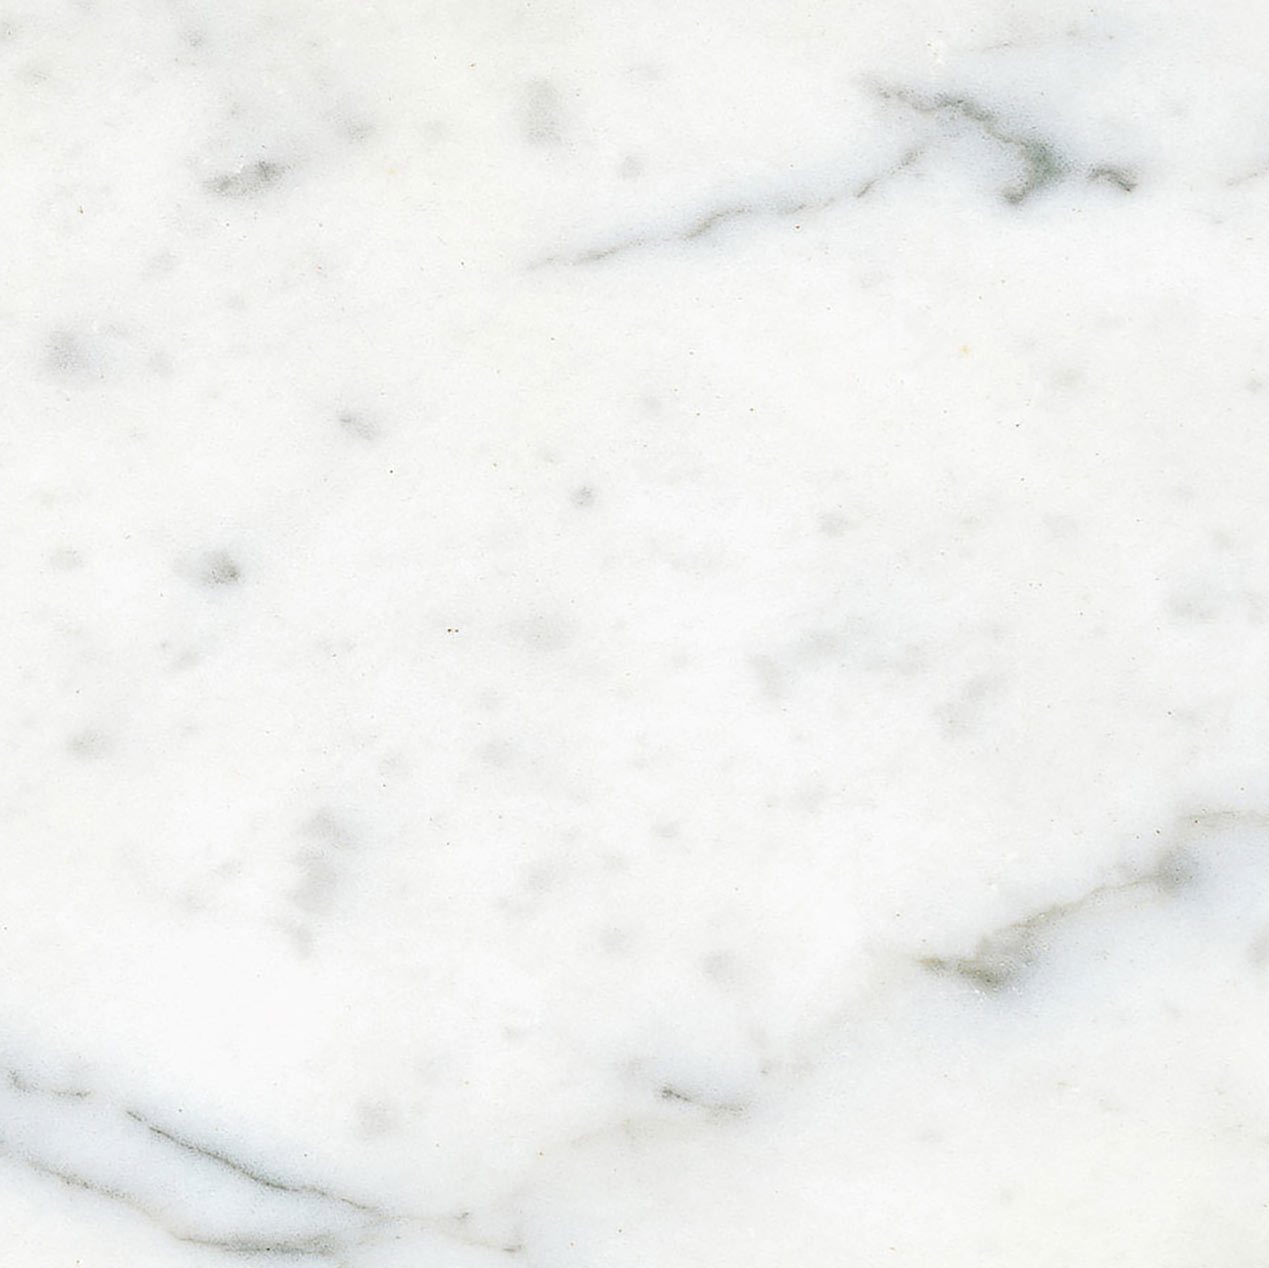 Blanco Carrara Gioia Tipo 1